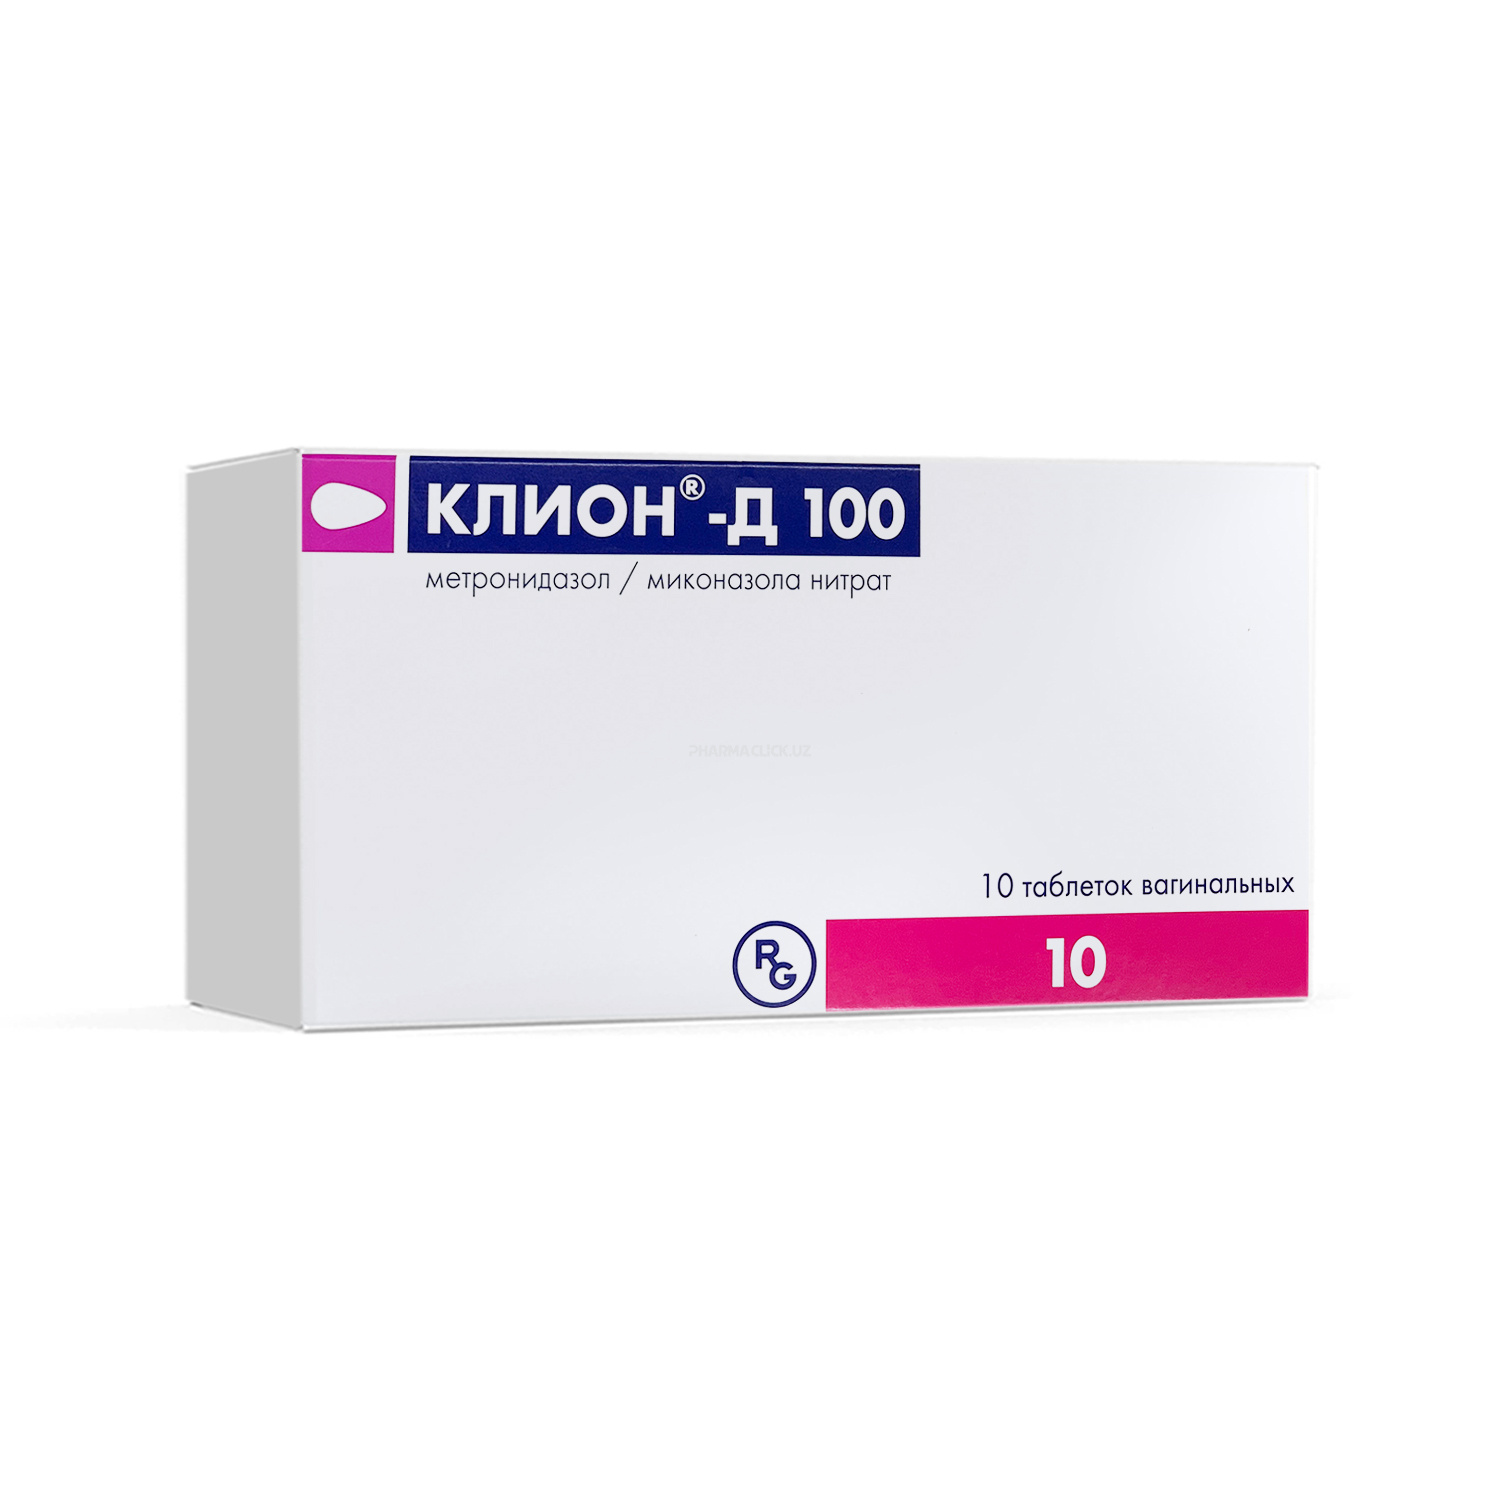 Klion D vag tab 100 mg №10